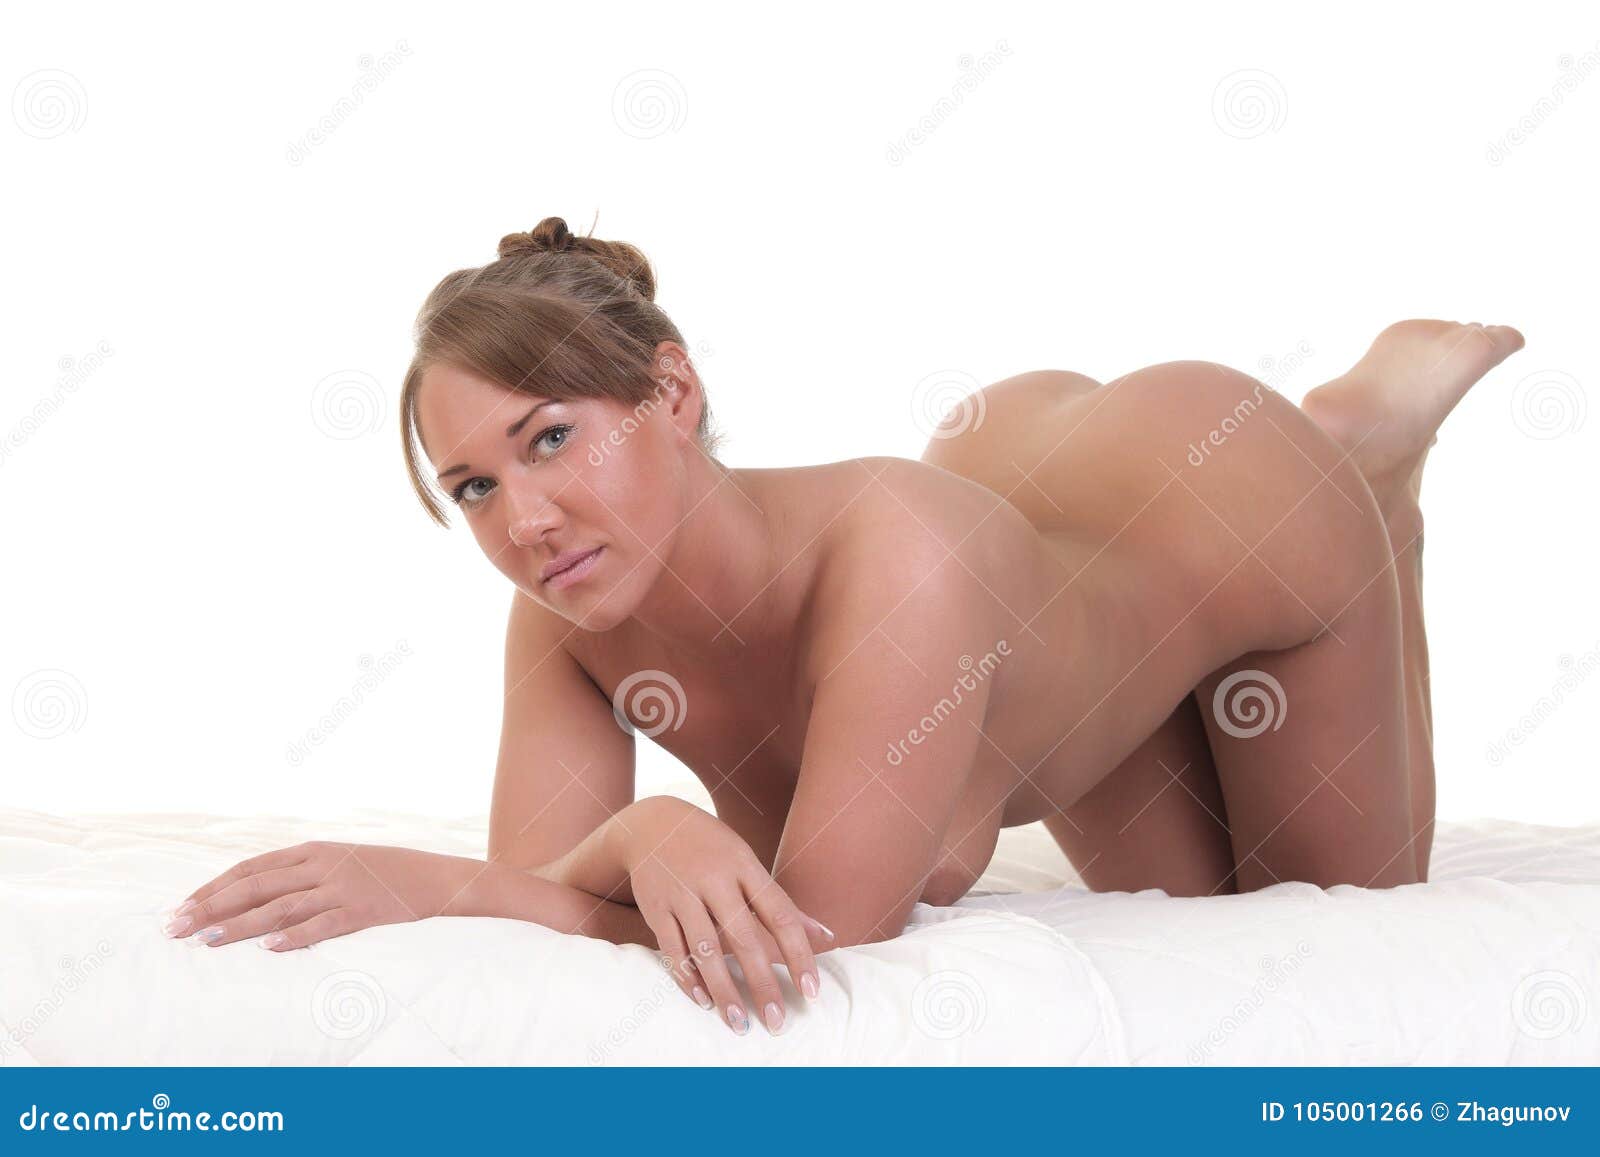 Donne Nude Di Estremità E Della Parte Posteriore Fotografia Stock